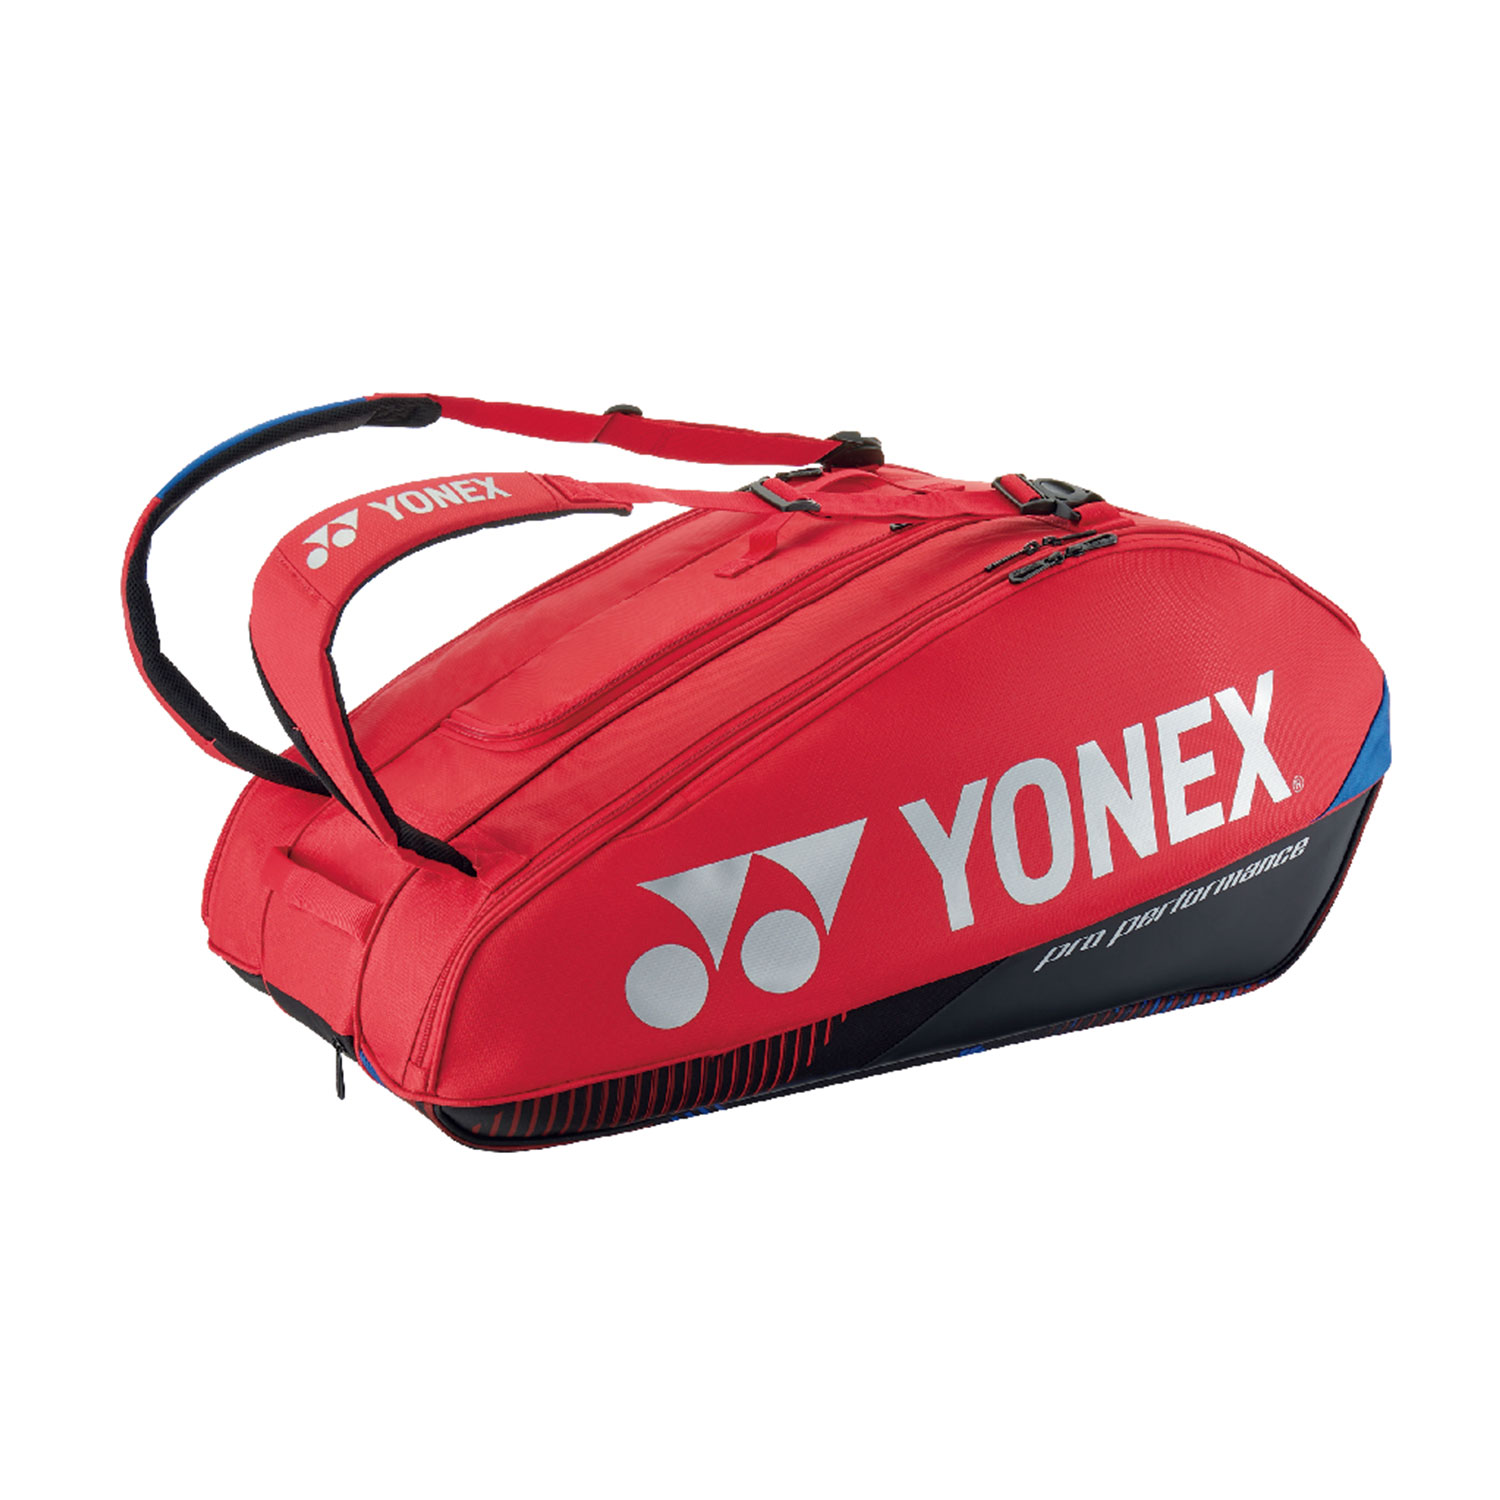 Yonex Bag Pro x 9 Bag - Scarlet